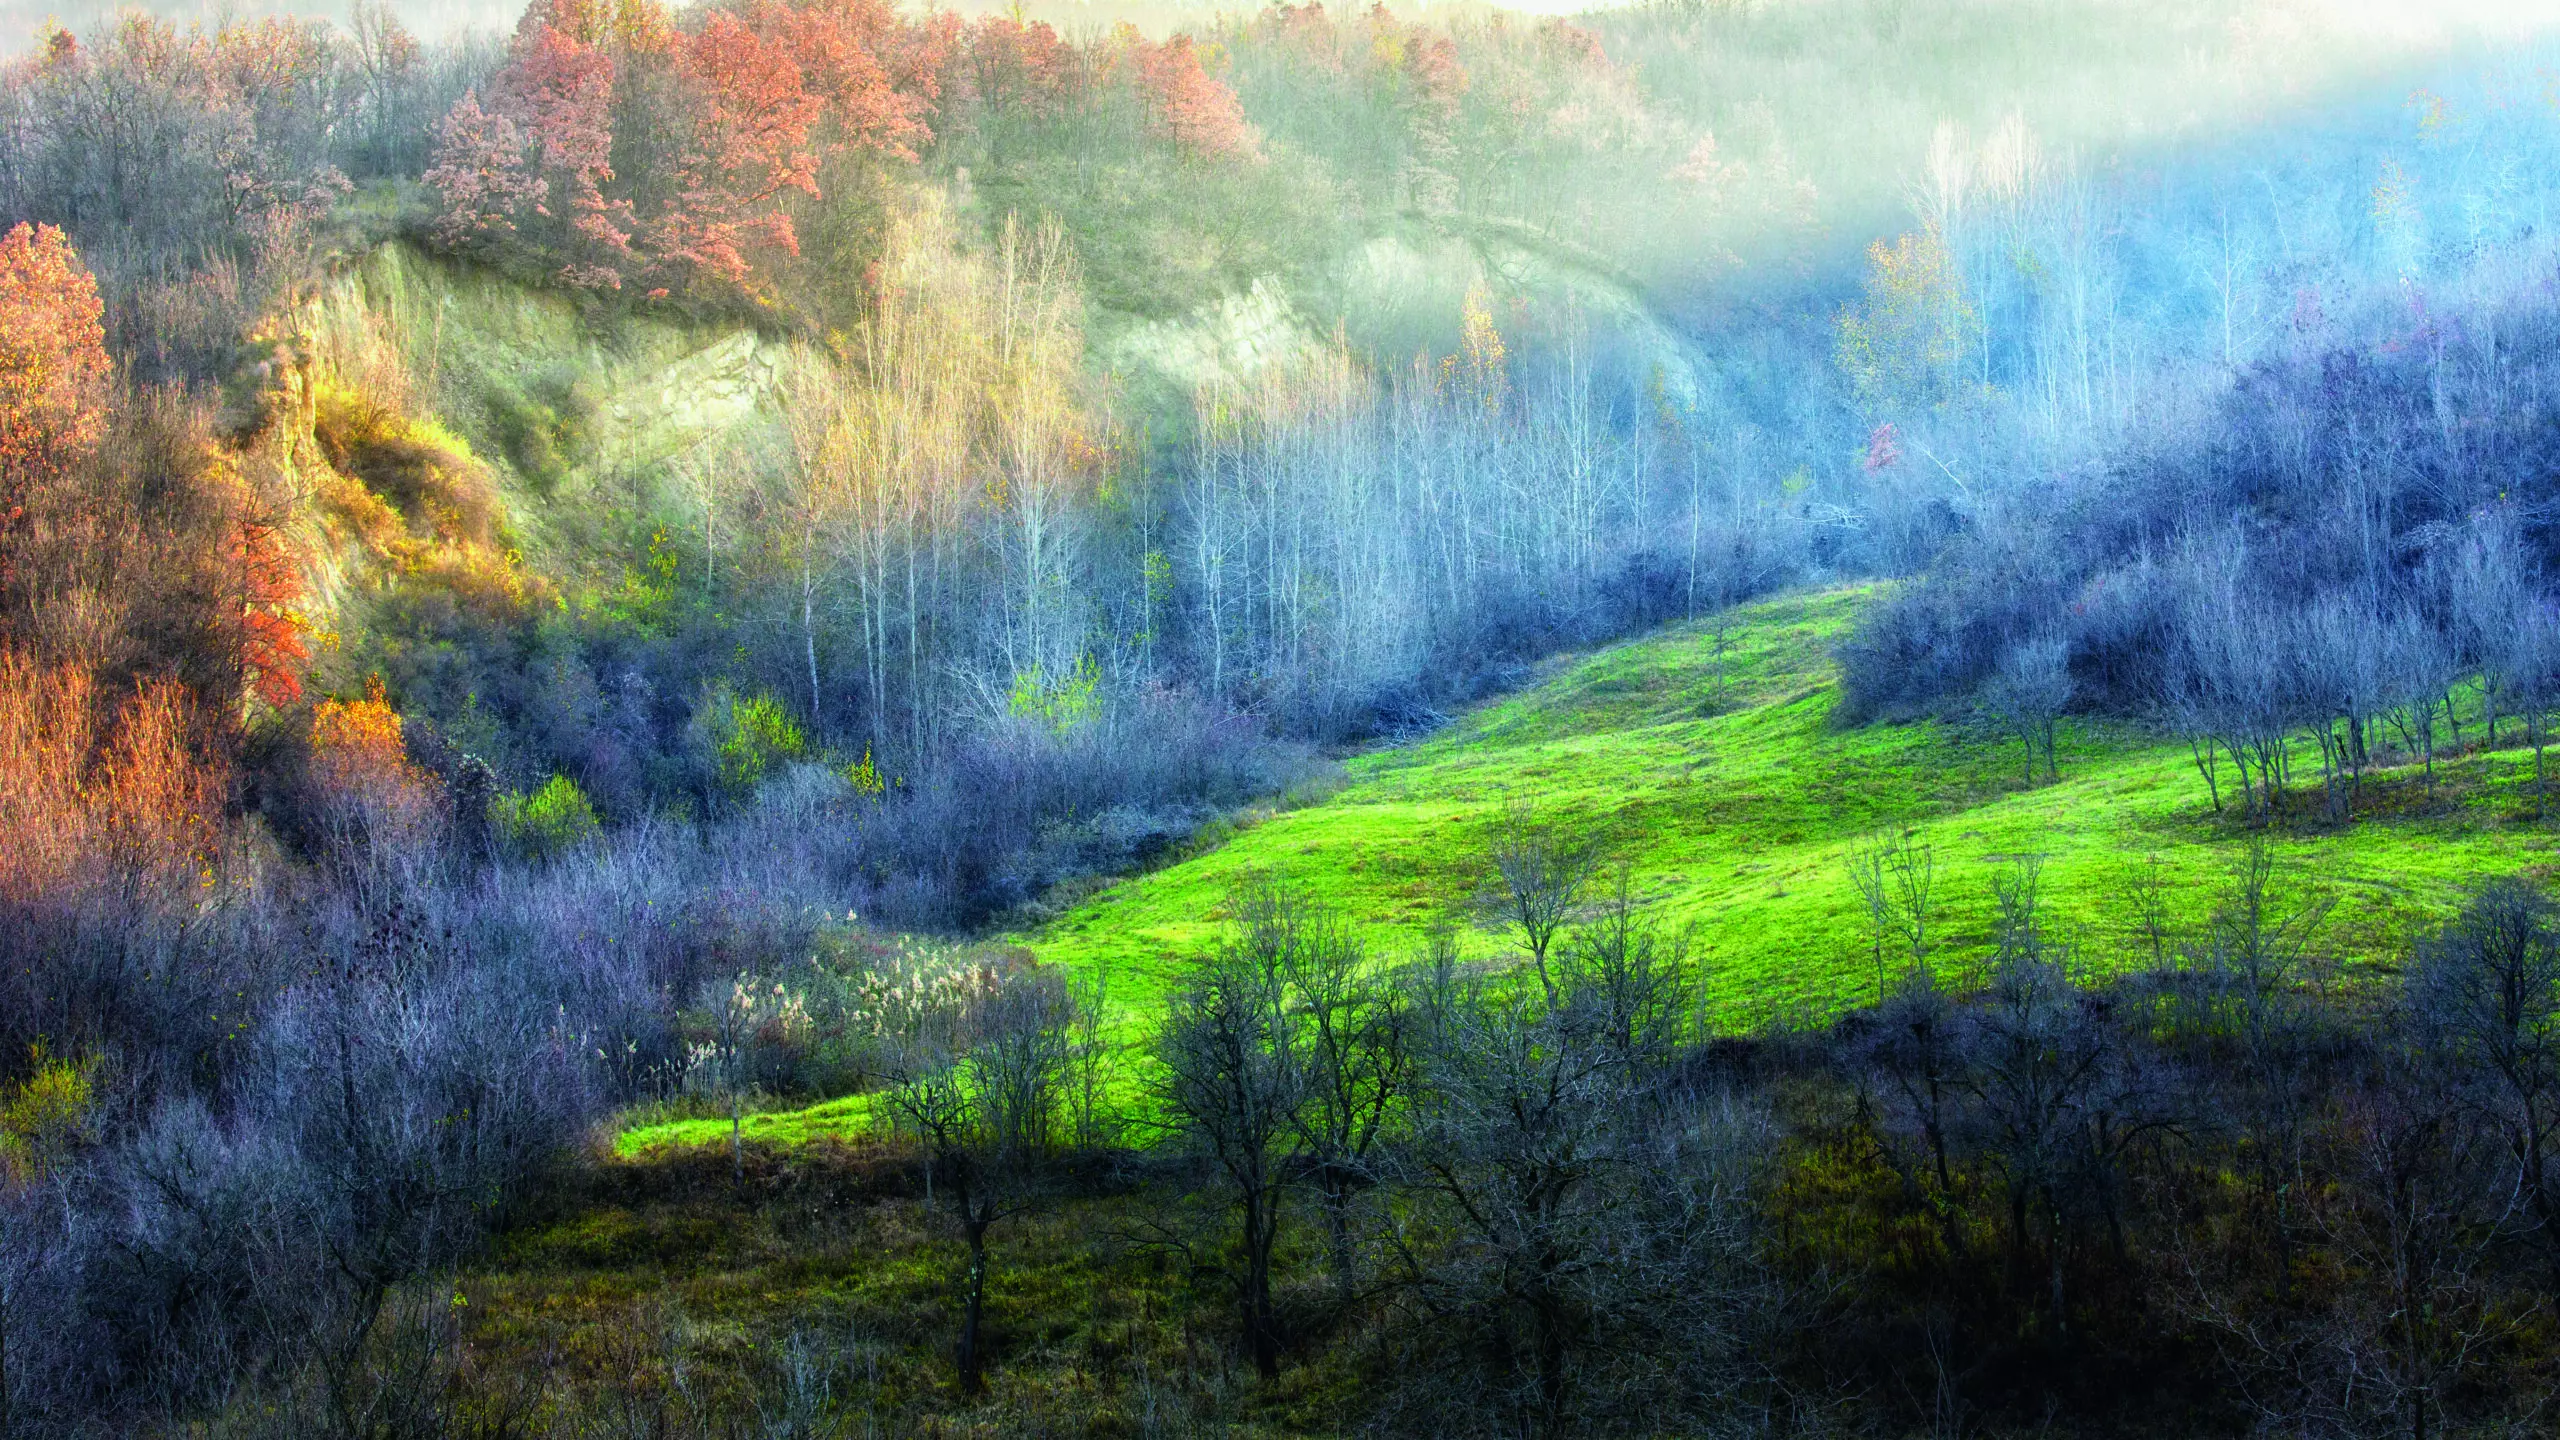 Wandbild (5199) November colours by Adrian Popan präsentiert: Natur,Landschaften,Bäume,Wälder,Herbst